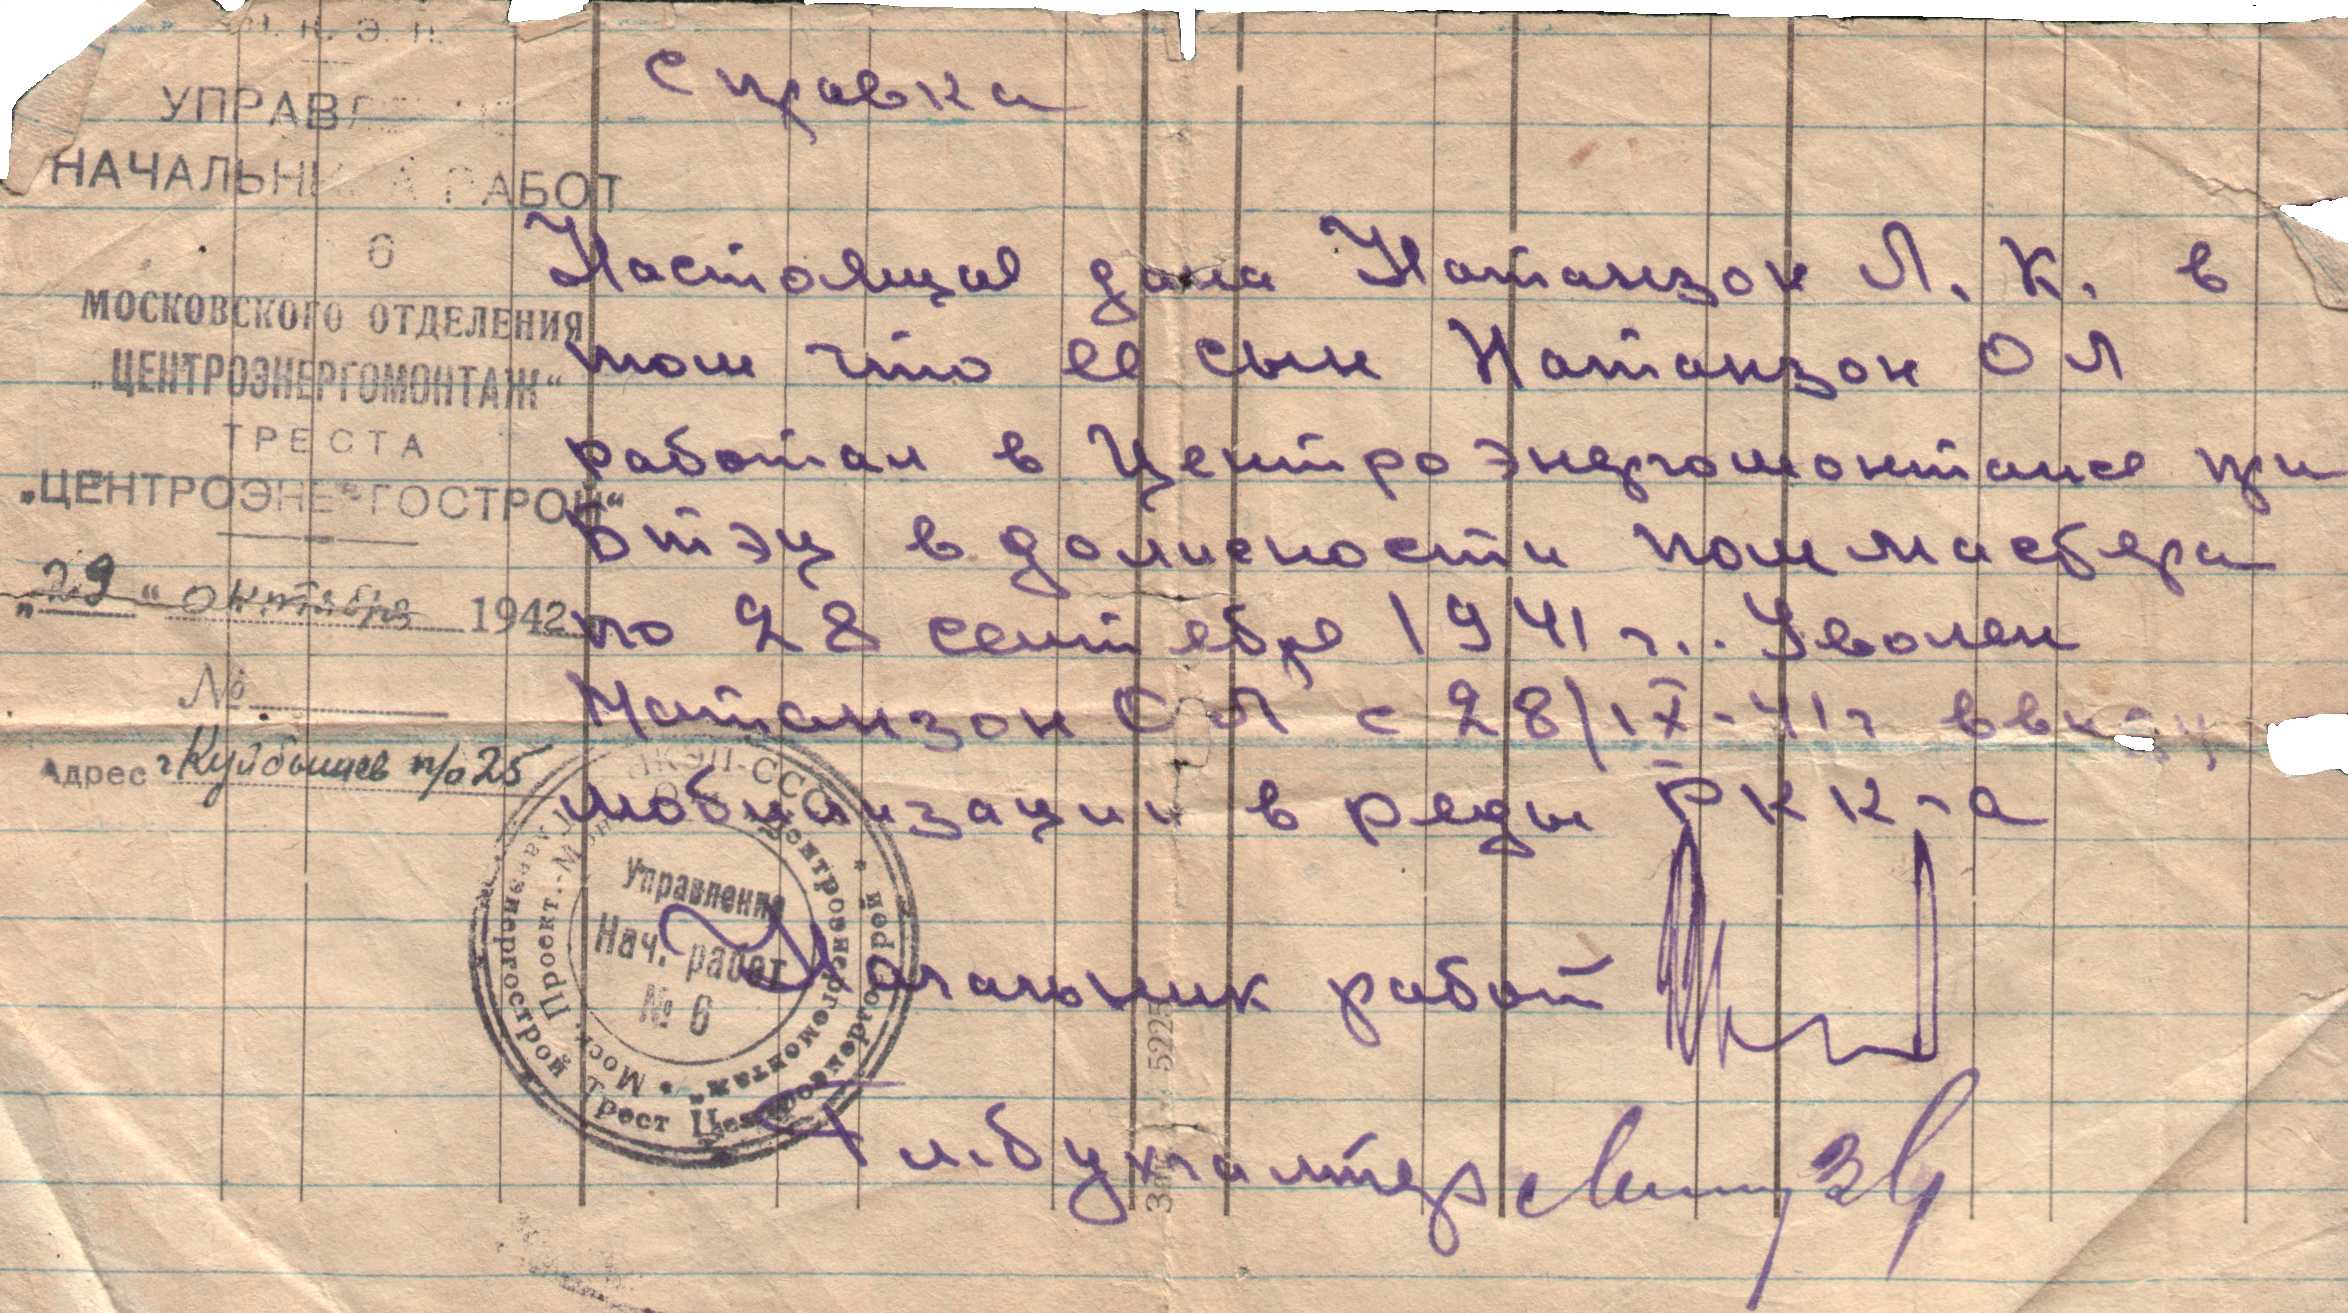 06 Справка о мобилизации О.Л. Натанзона в ряды Красной Армии. 1942 г.